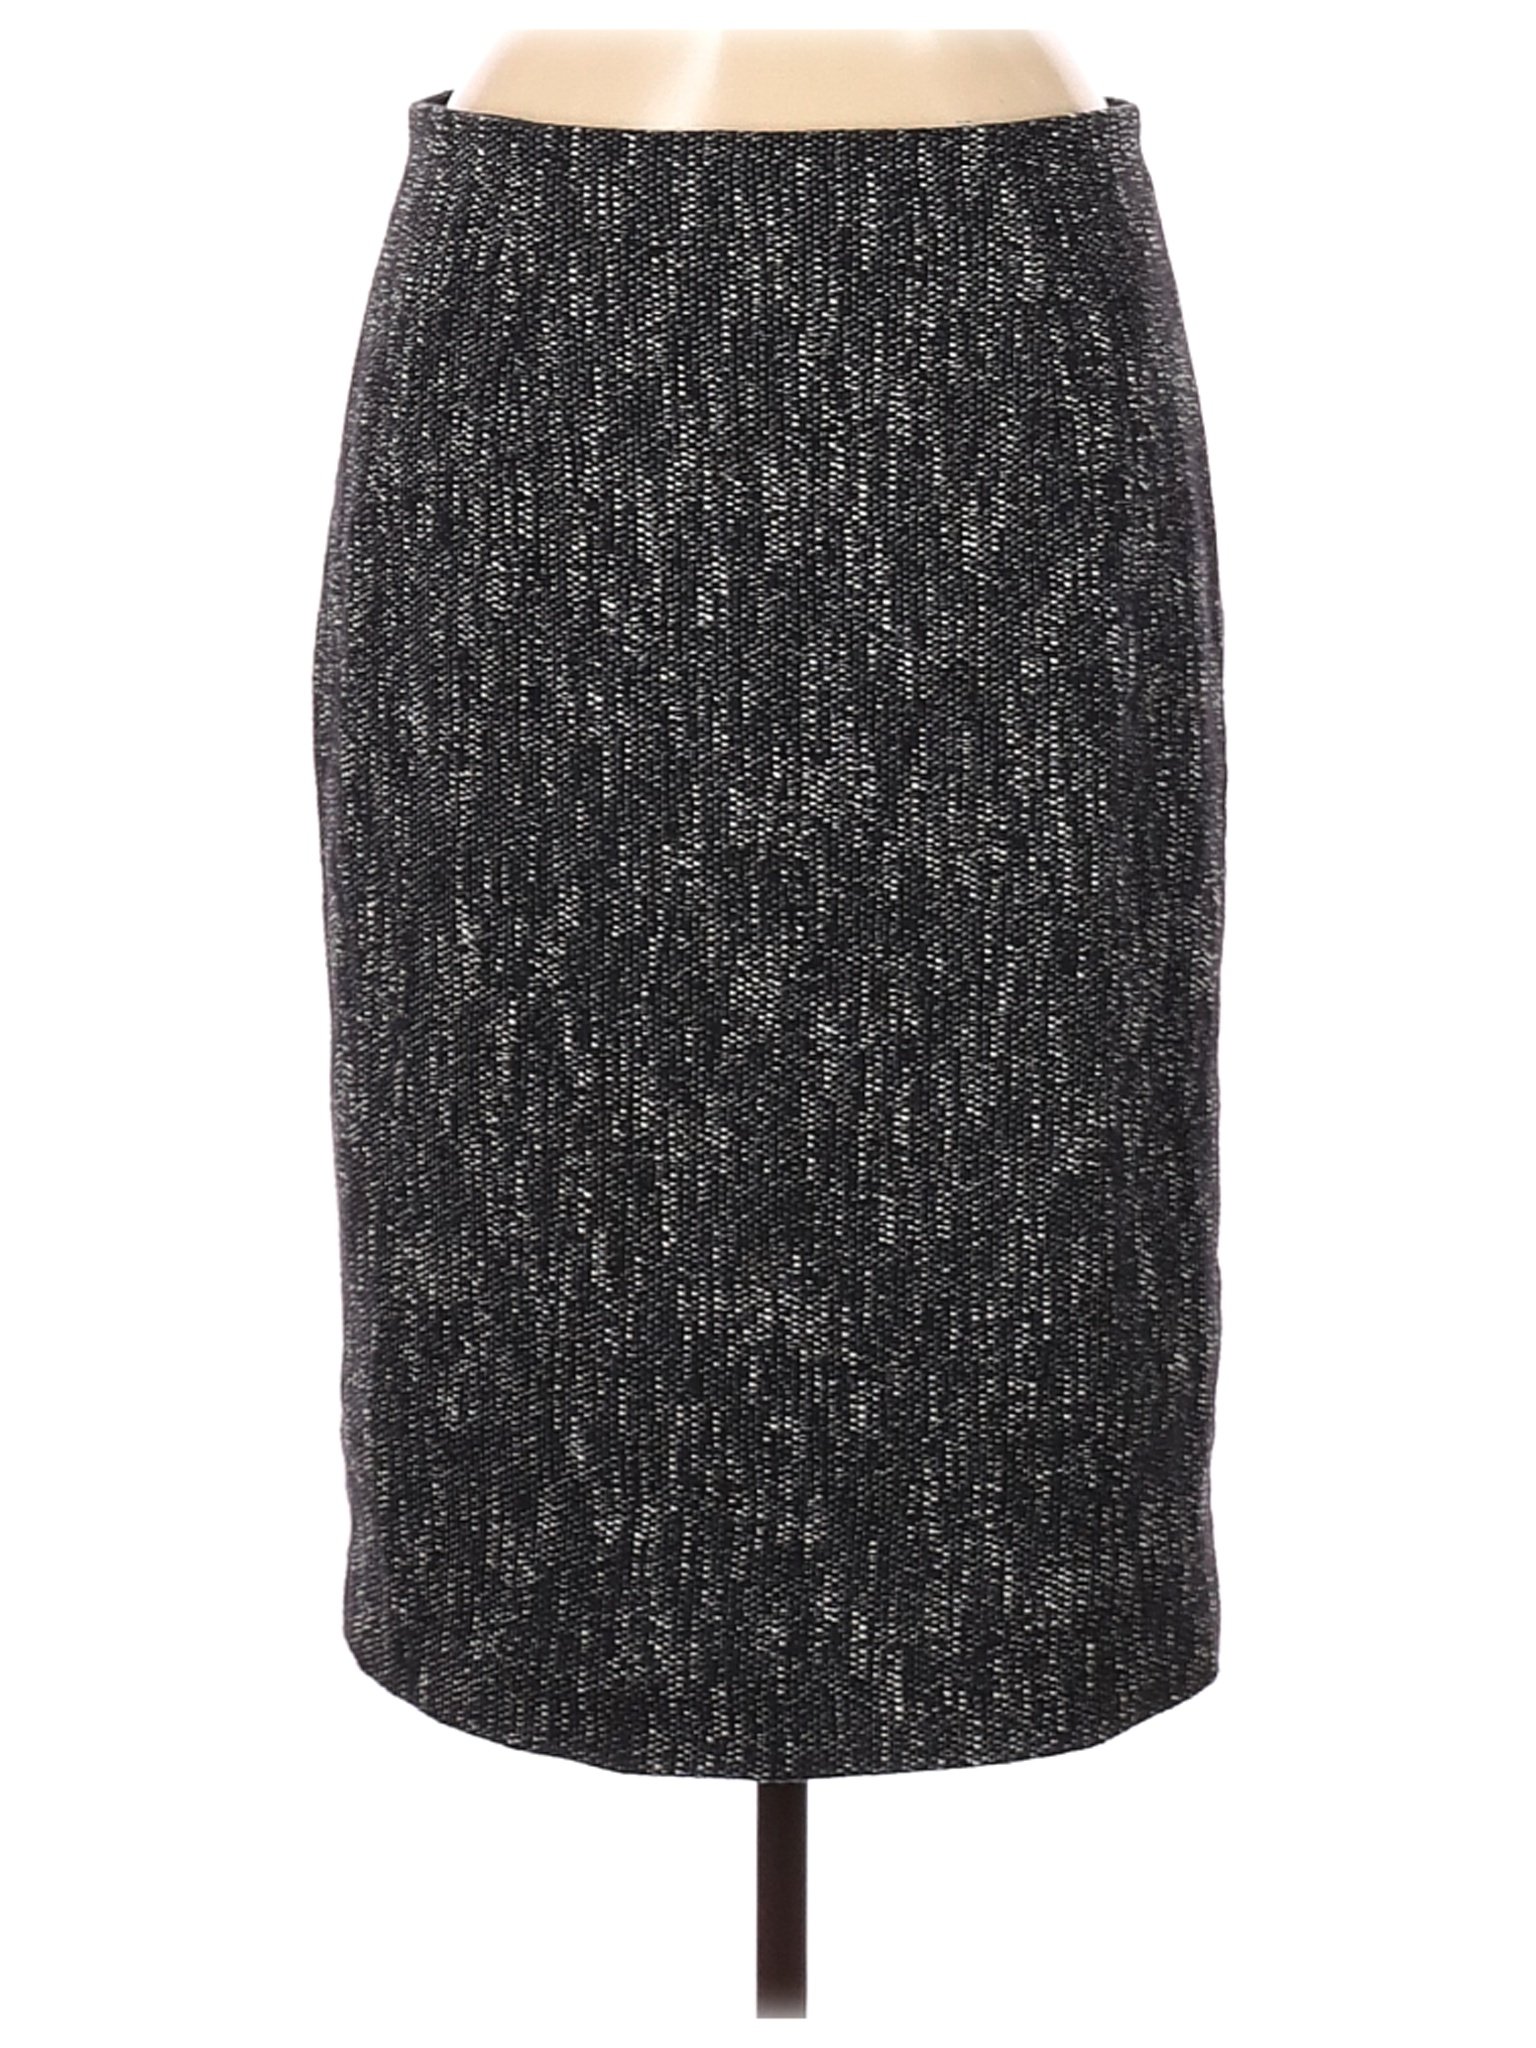 Talbots Women Black Formal Skirt 8 | eBay